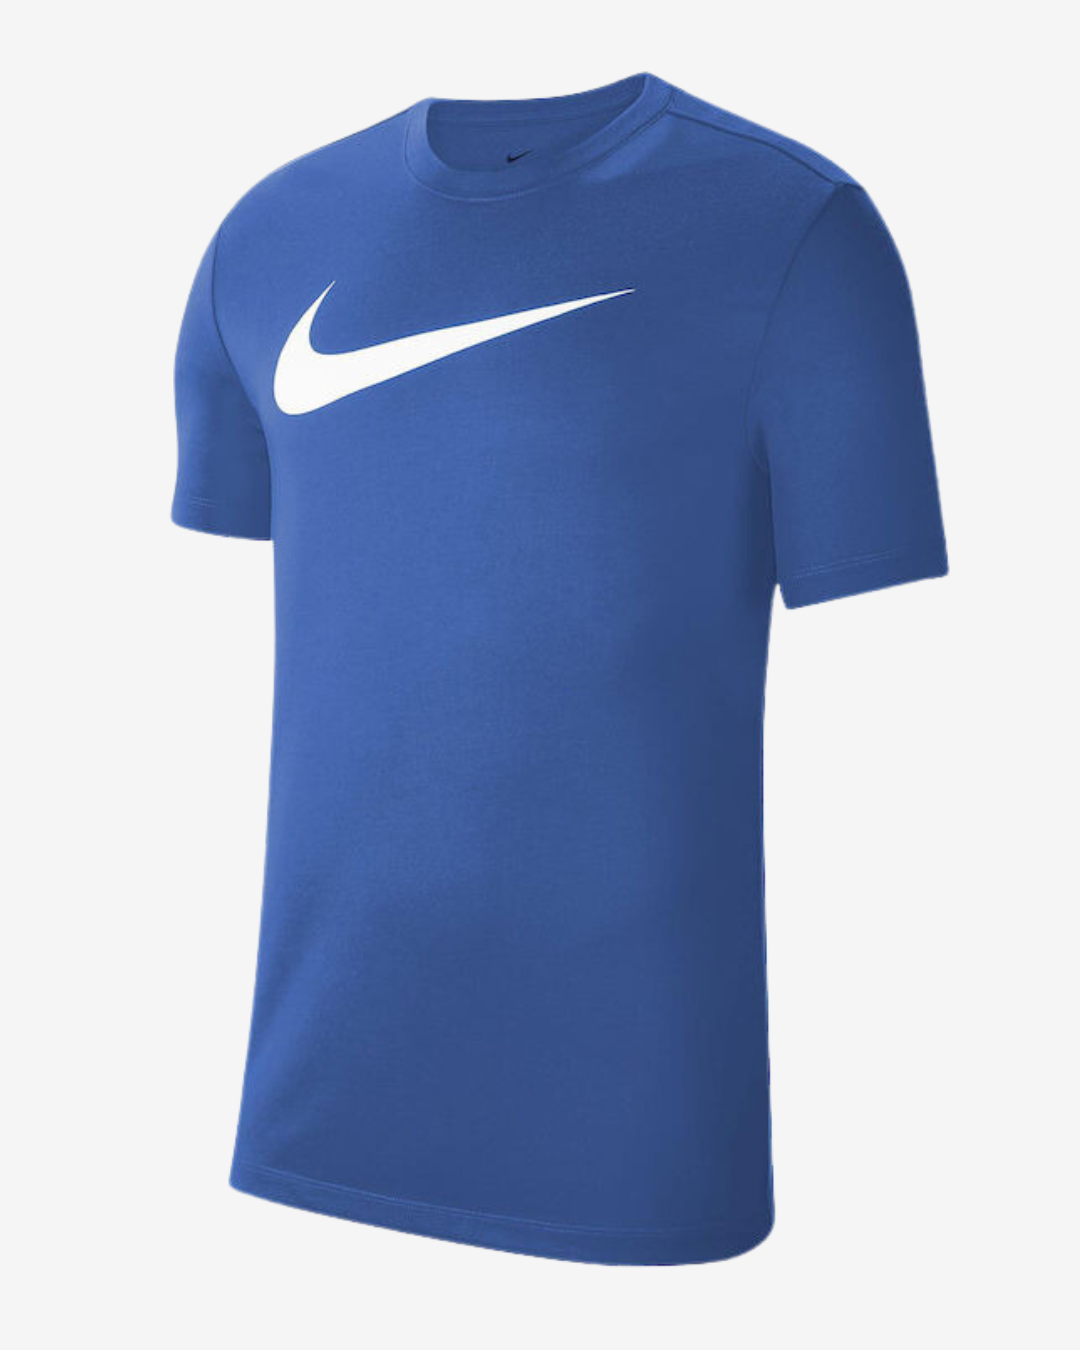 Nike Dri-fit park 20 t-shirt - Blå - Str. XXL - Modish.dk